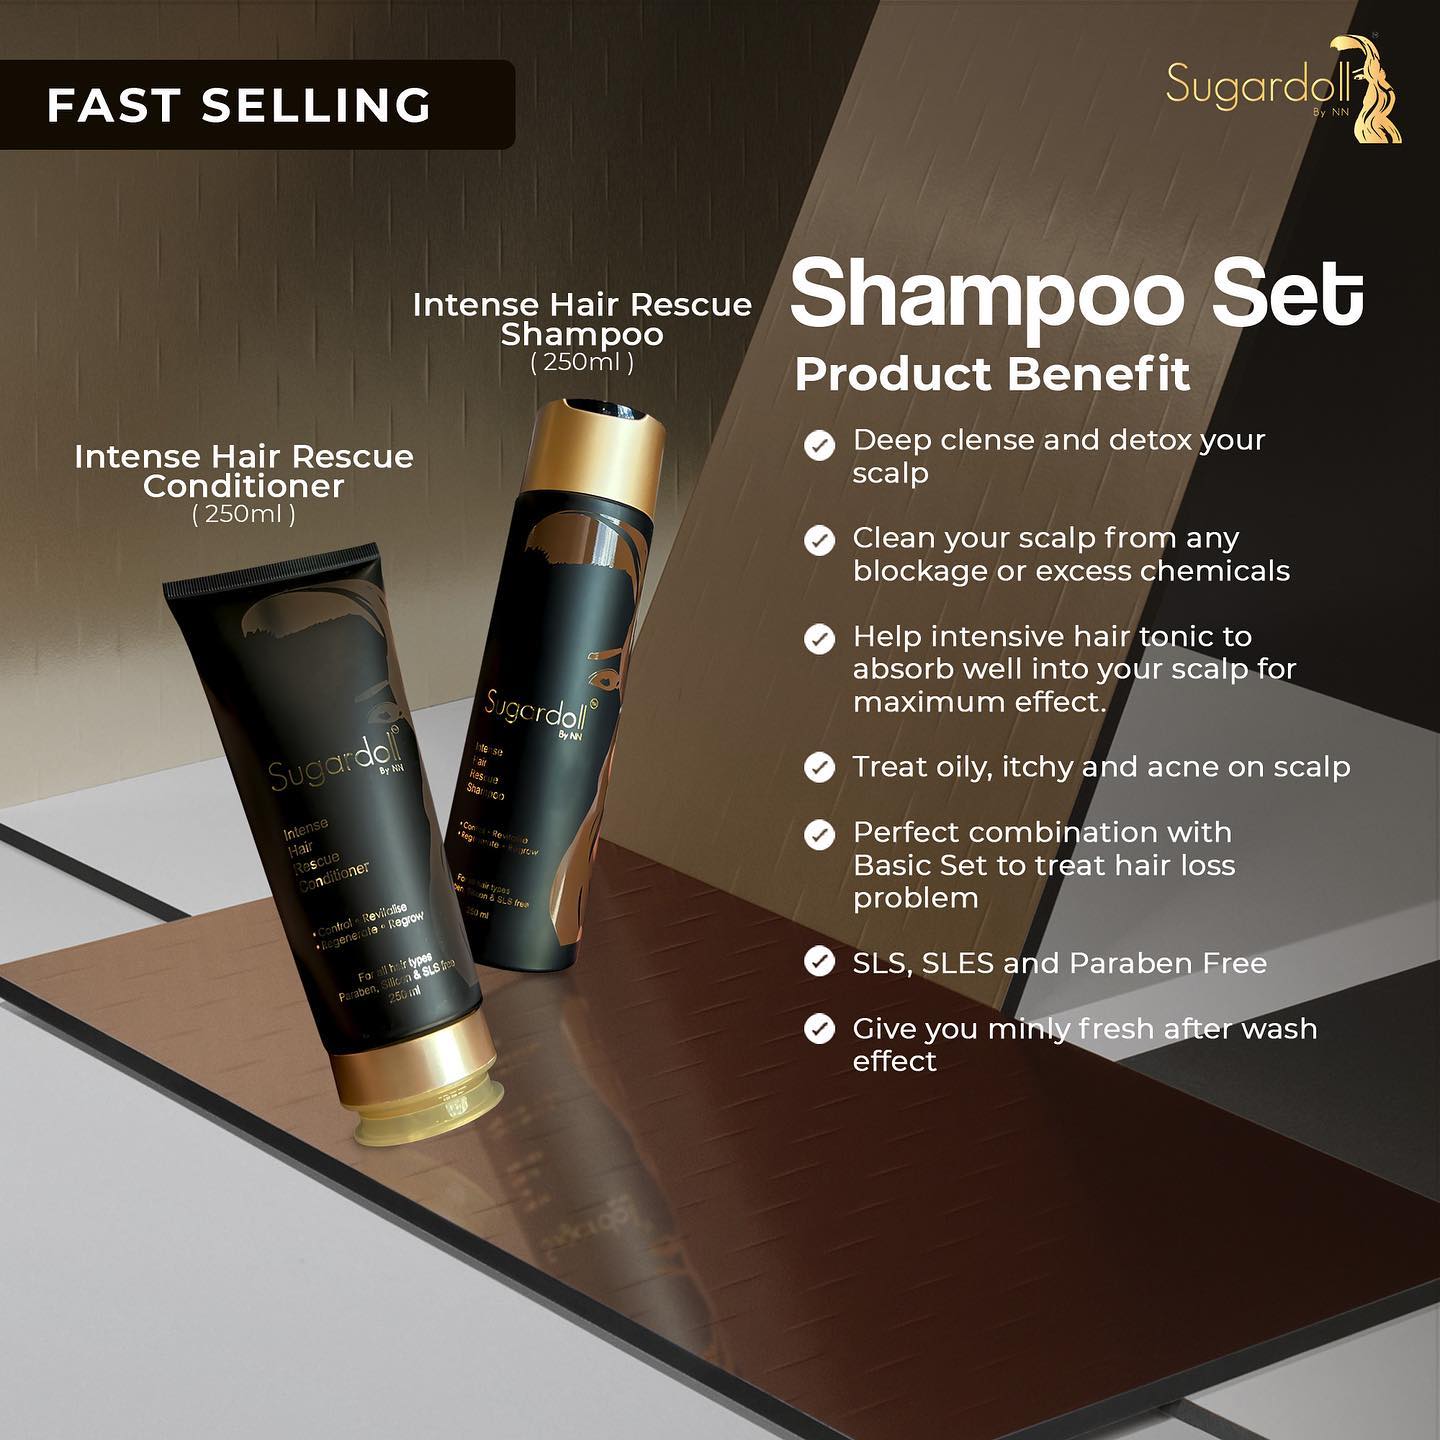 Intense Hair Rescue Shampoo Set